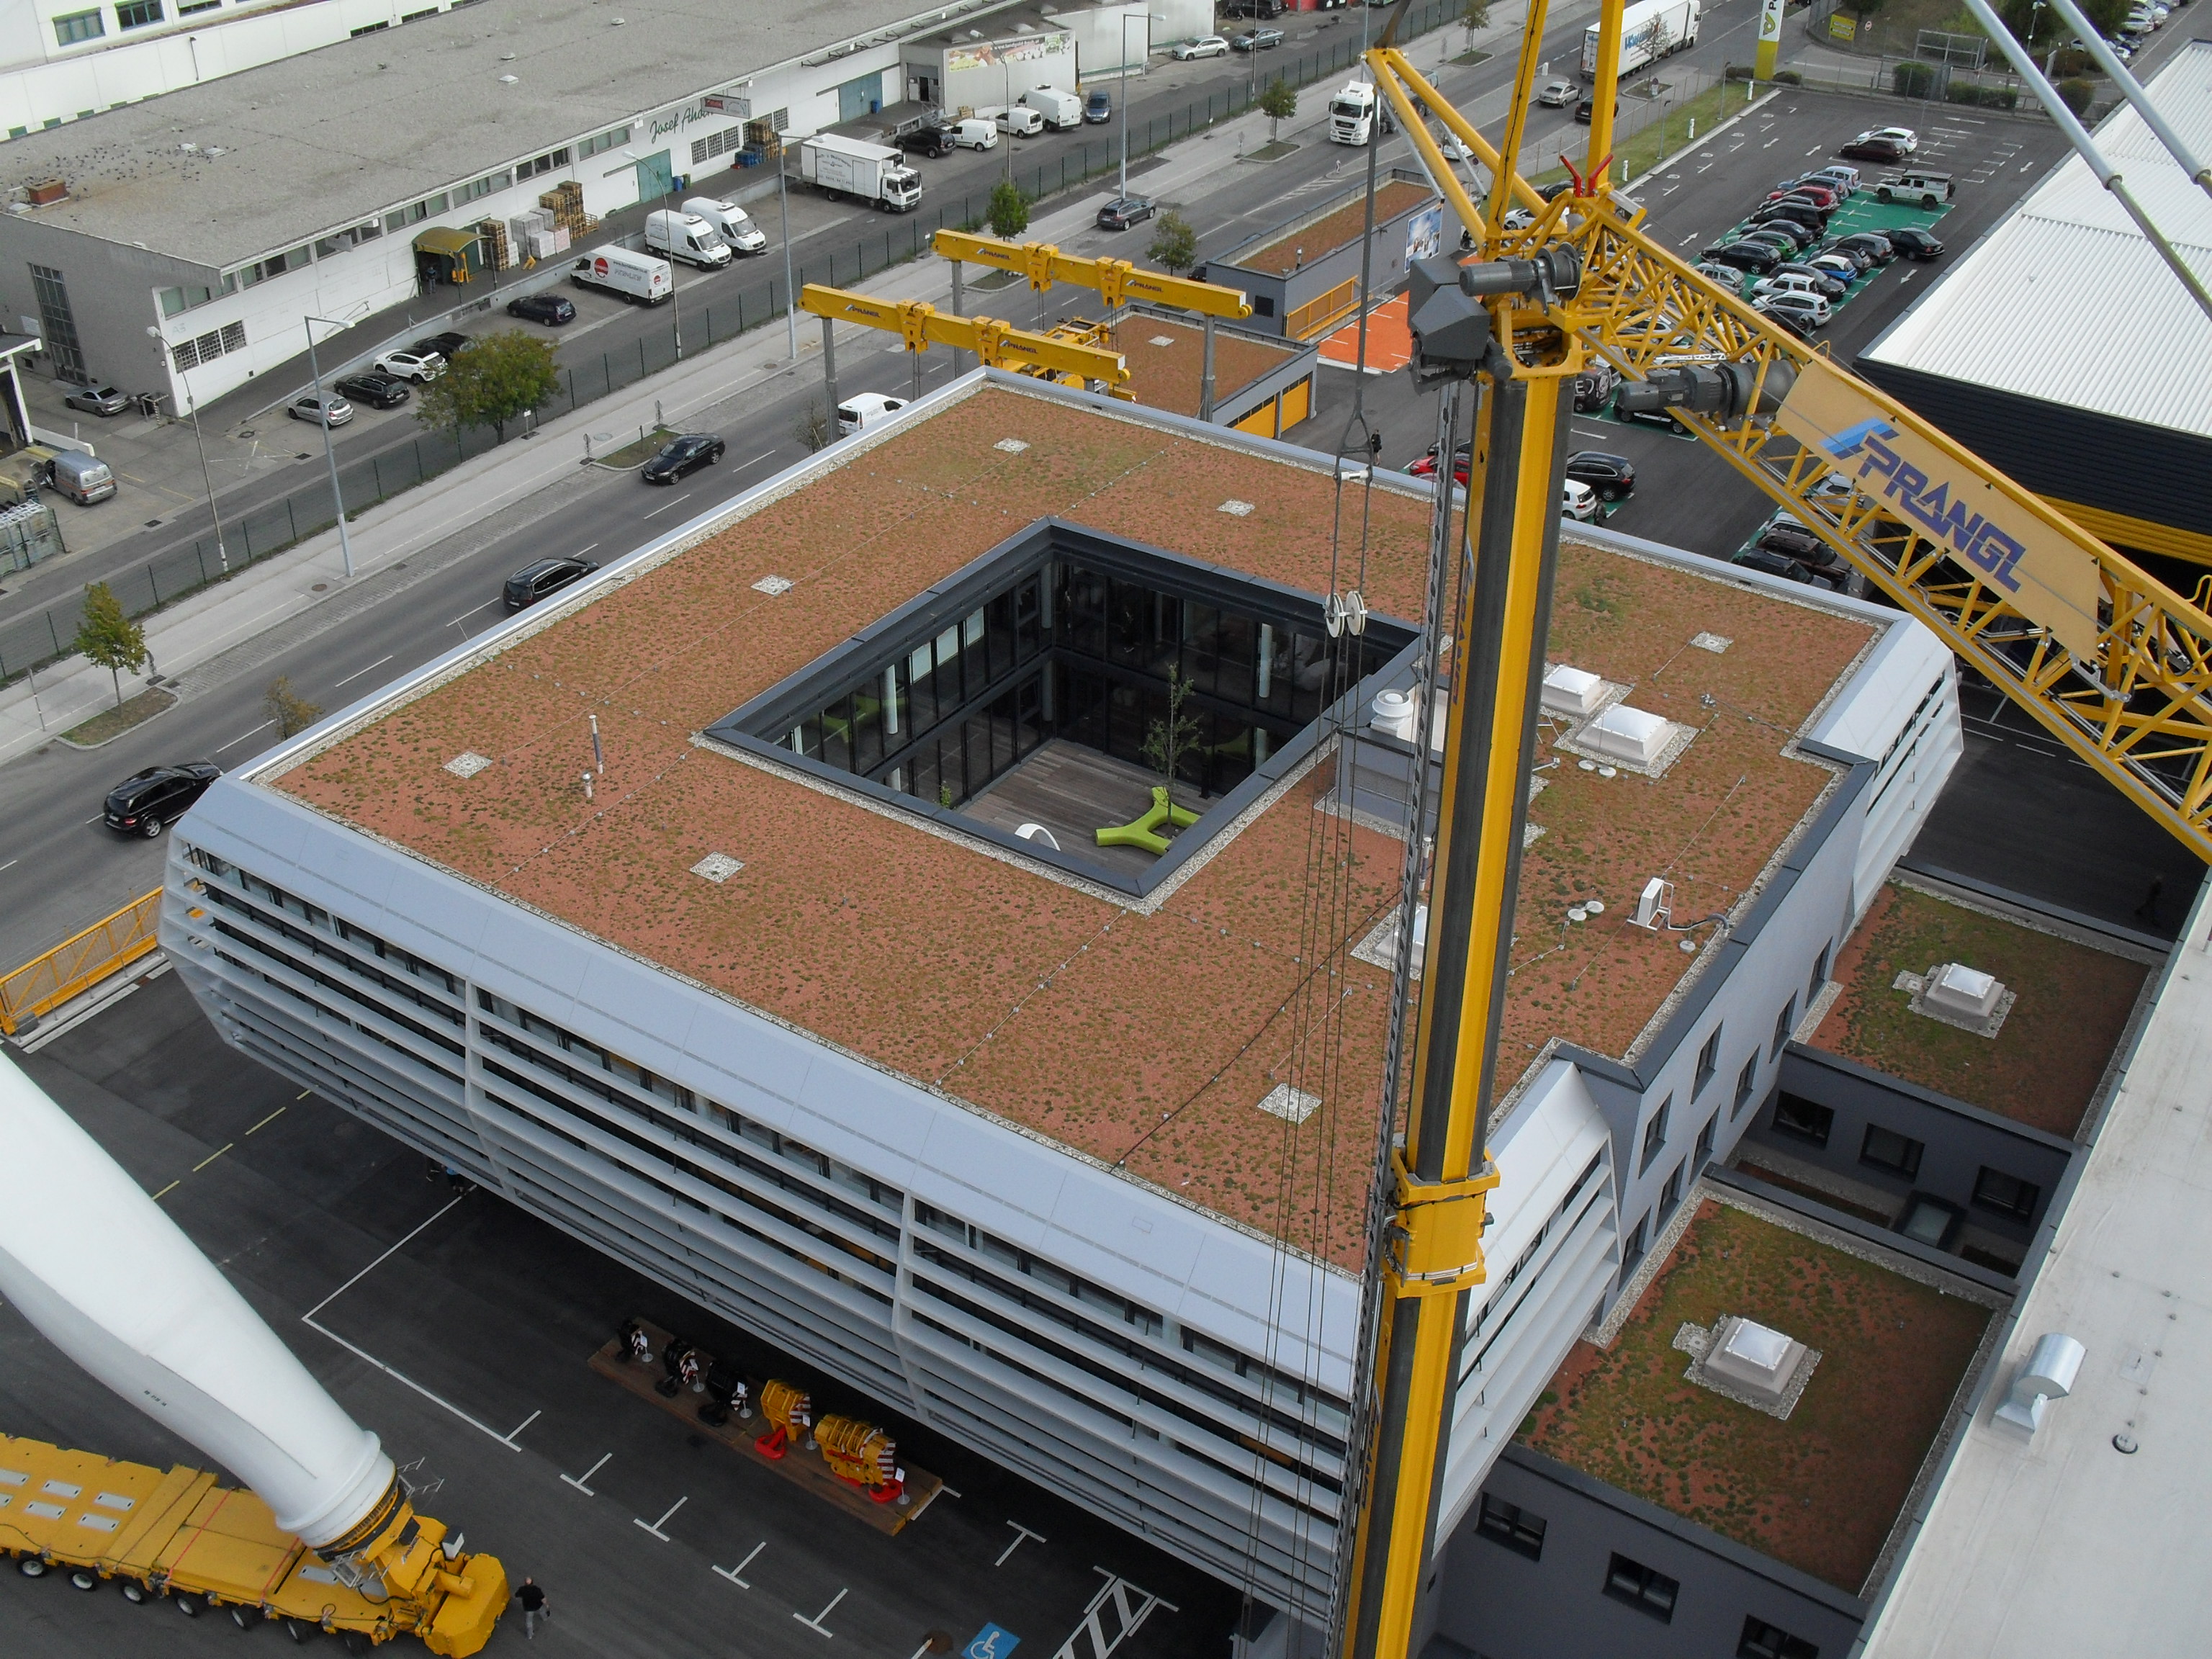 40 Mio. Euro-Investition in die neue Prangl-Zentrale in Wien